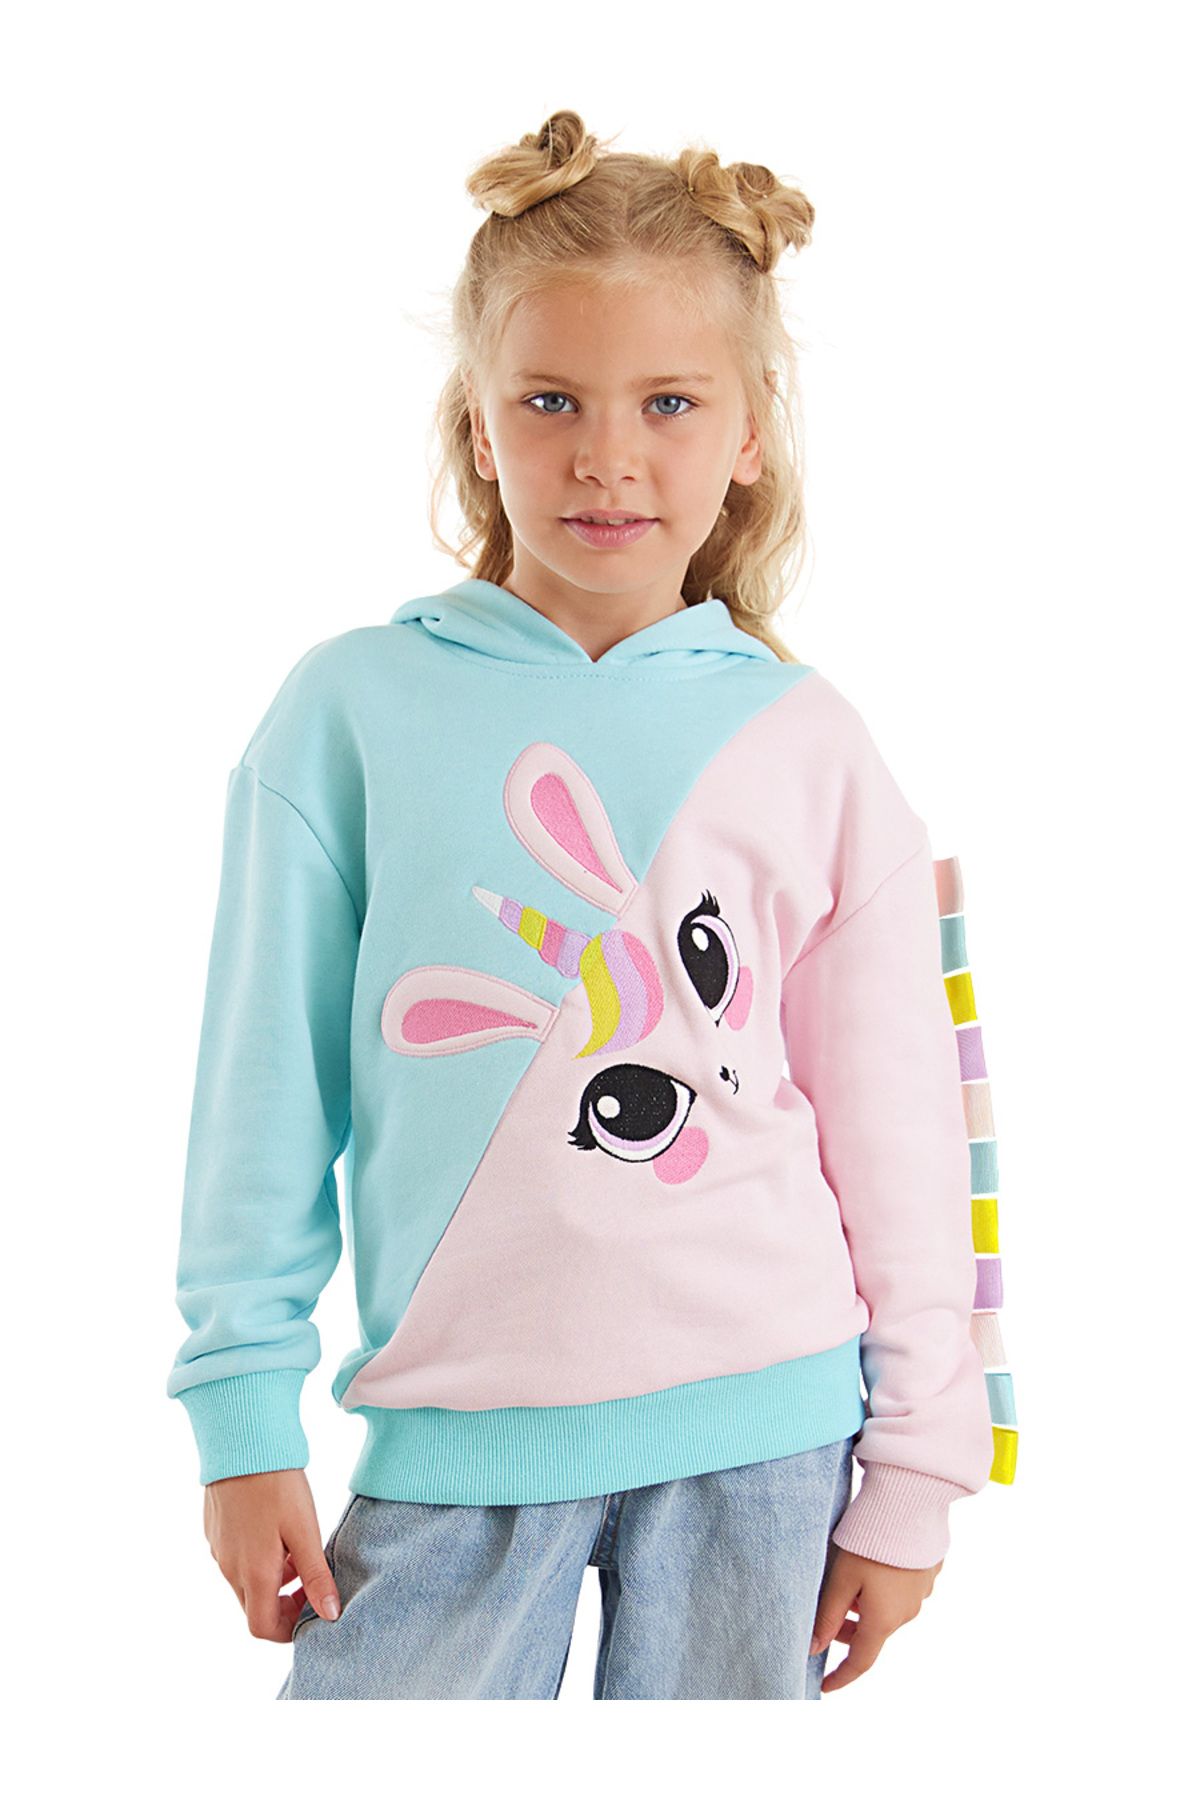 Denokids Unicorn Tavşan Kız Çocuk Sweatshirt